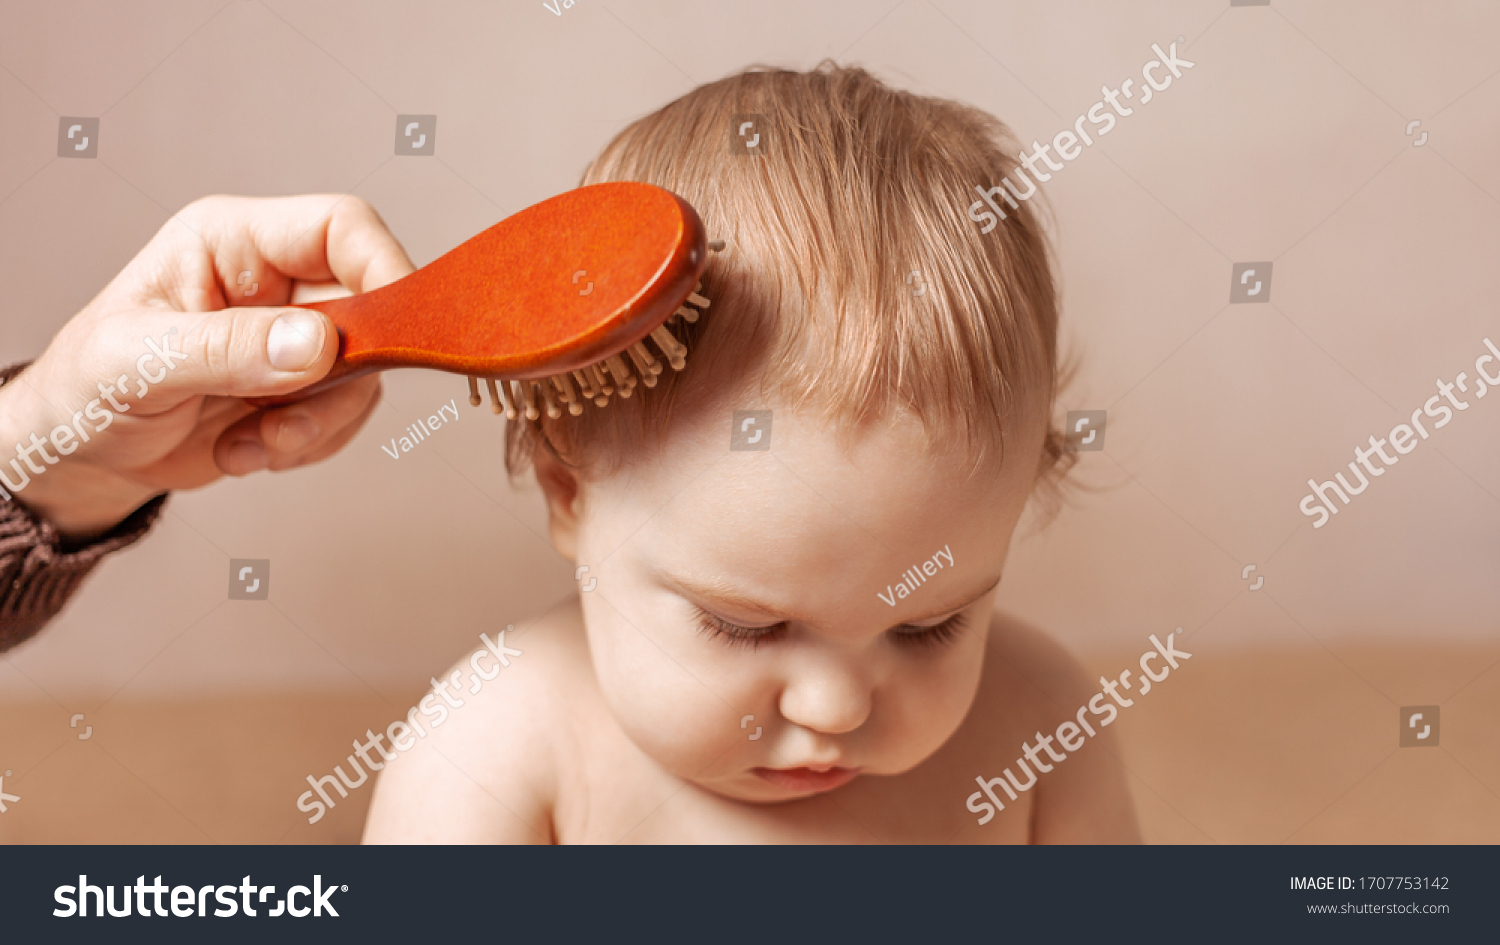 可爱的微笑小女孩梳梳头梳头 库存照片. 图片 包括有 有吸引力的, 乐趣, 节假日, 女儿, 女性, 女孩 - 168401236